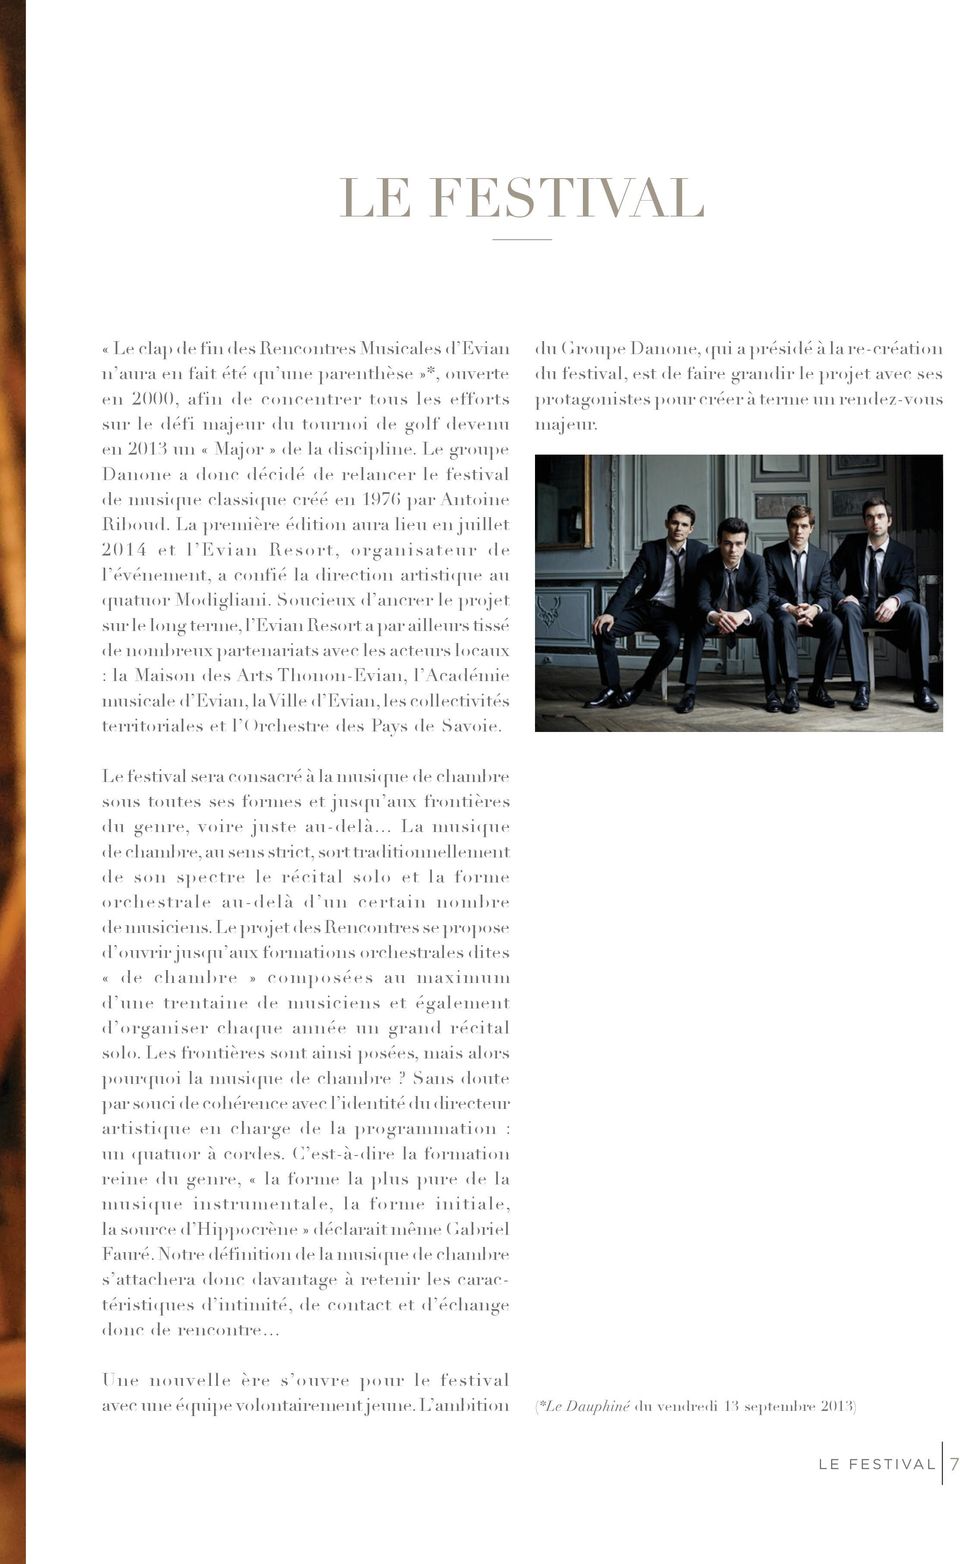 La première édition aura lieu en juillet 2014 et l Evian Resort, organisateur de l événement, a confié la direction artistique au quatuor Modigliani.